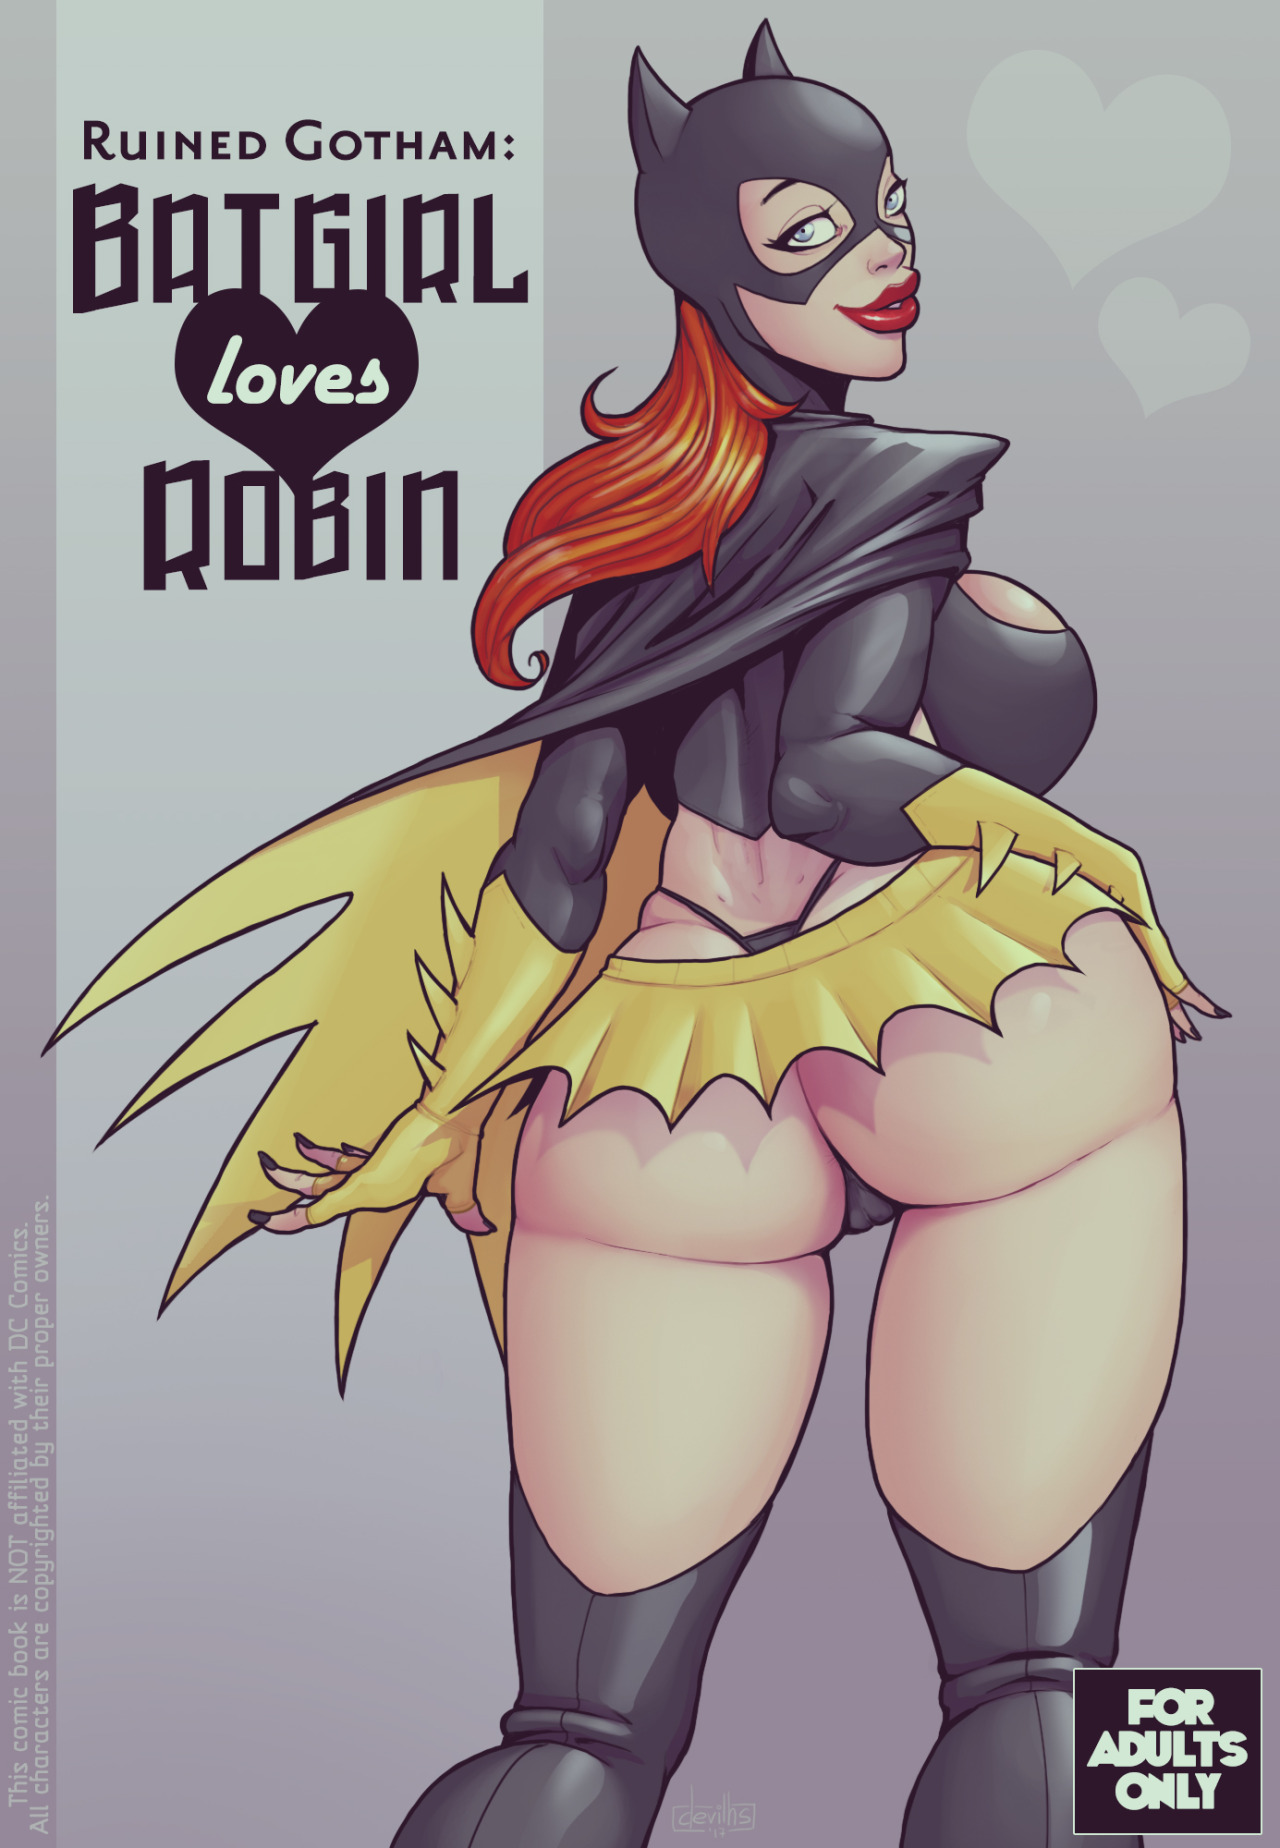 DevilHS Batgirl loves Robin Porn Comic